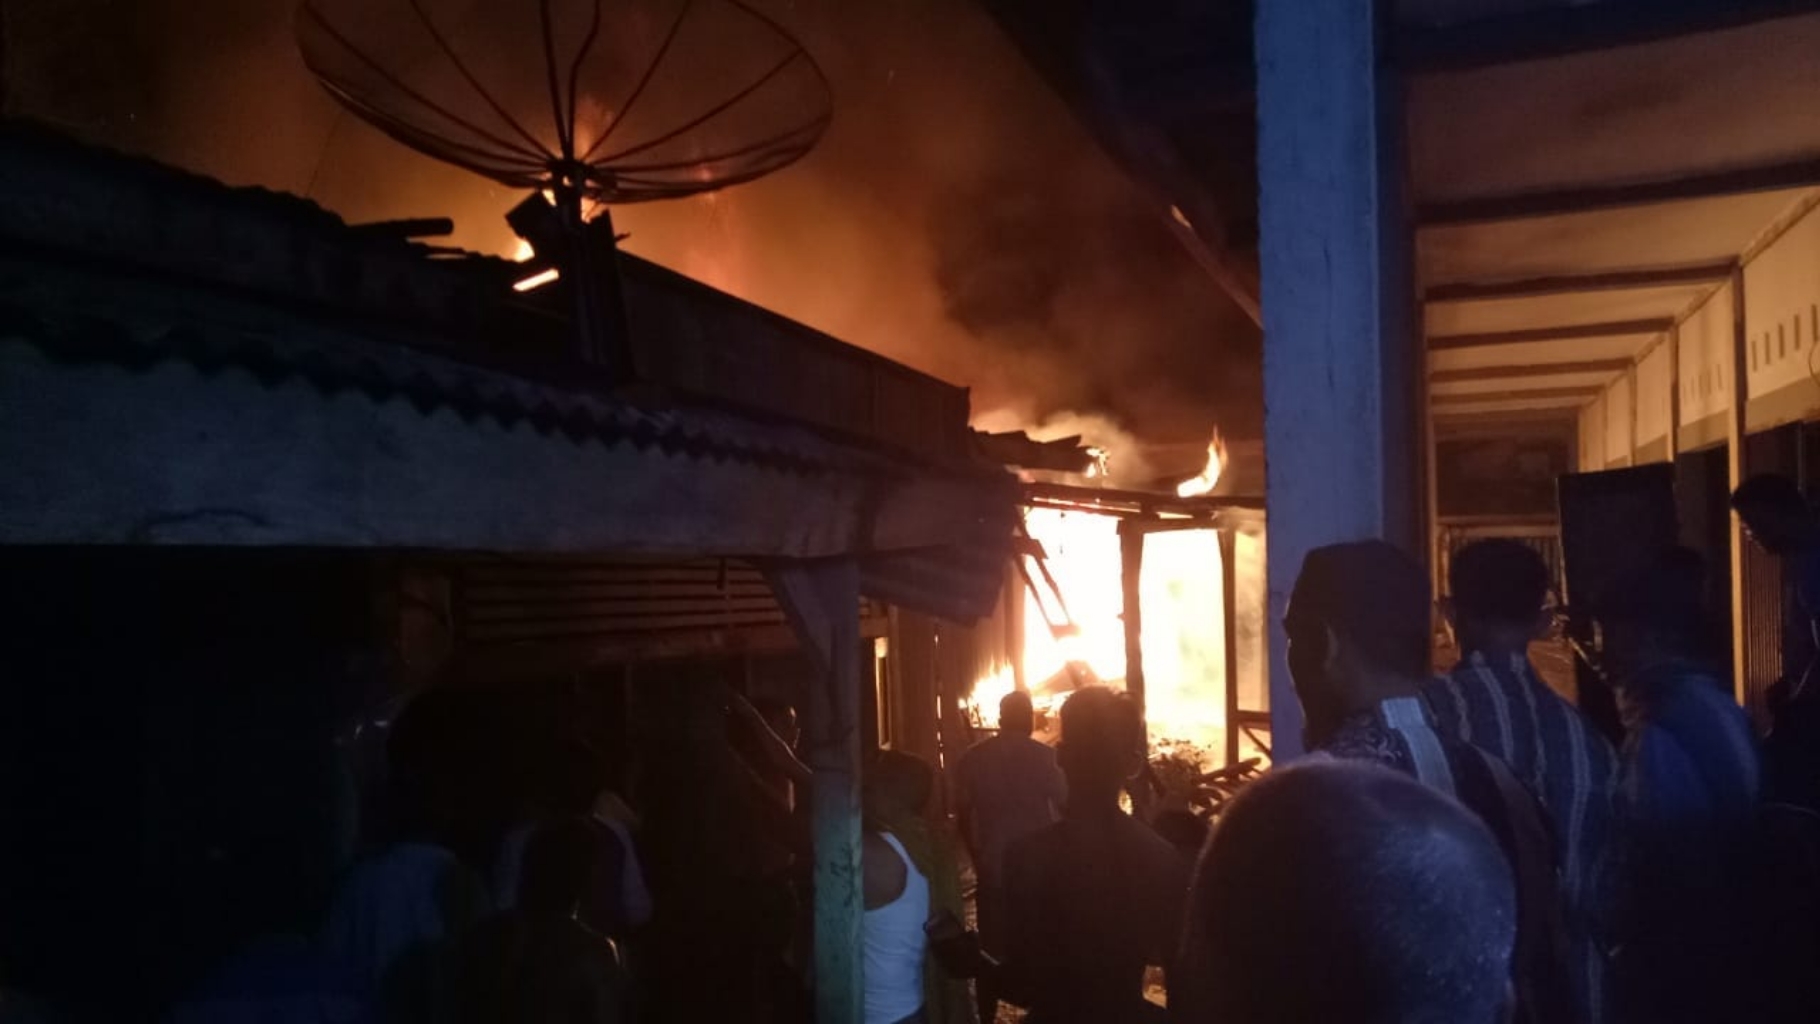 3 Unit Kios di Pasar Kuala Kilan Inhu Hangus Terbakar, Kerugian Mencapai Ratusan Juta